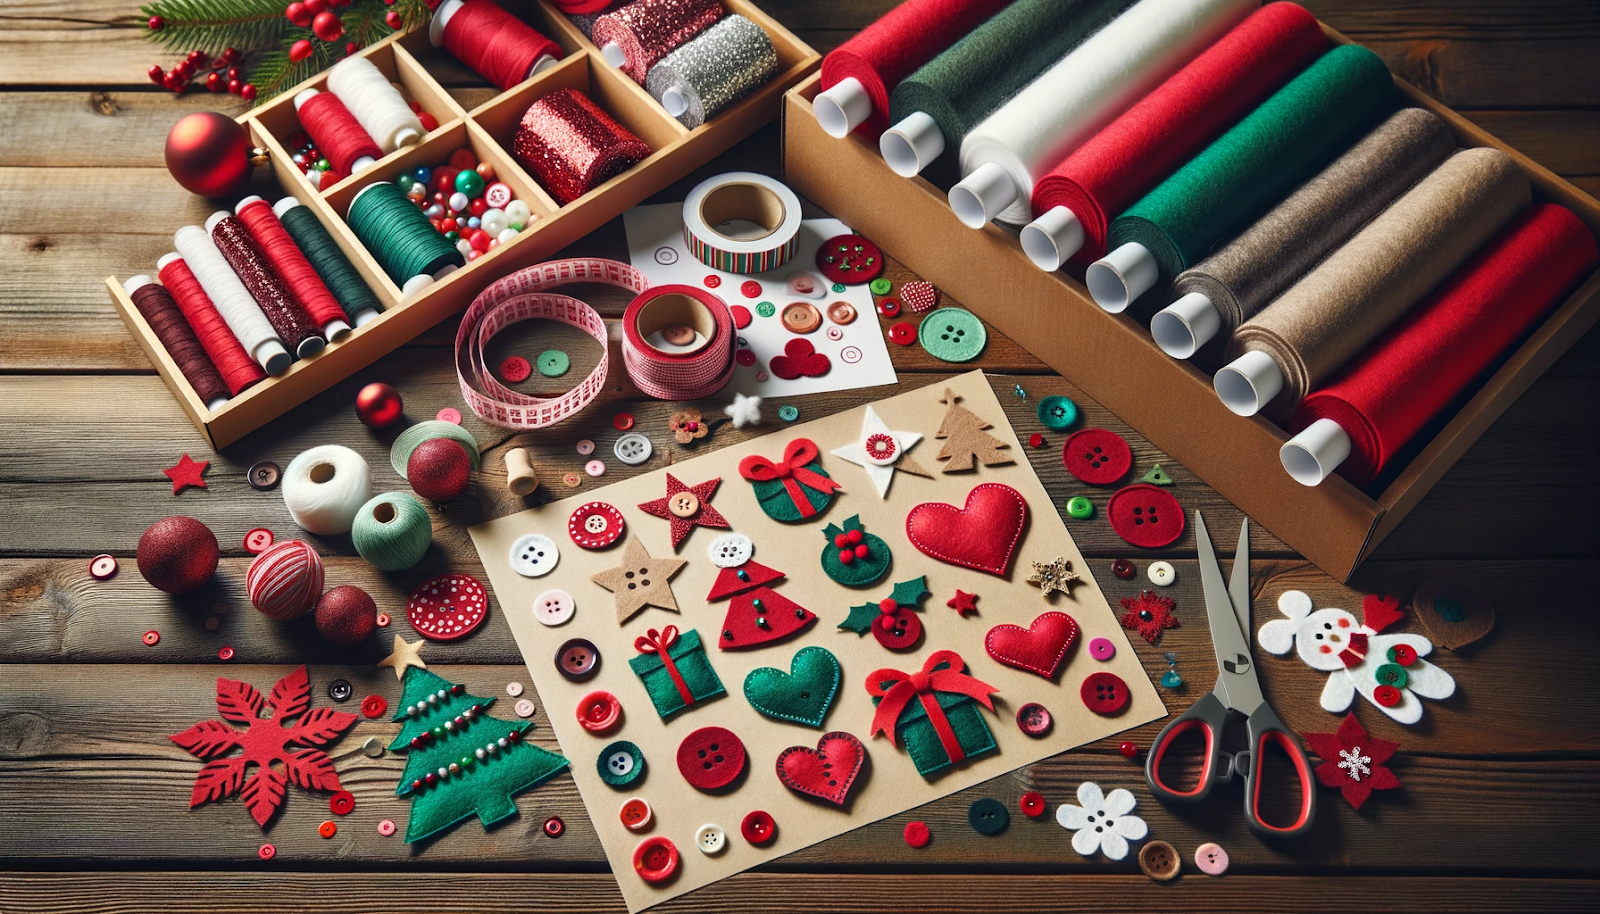 uma estação de artesanato dedicada à criação de decorações de Natal em feltro.